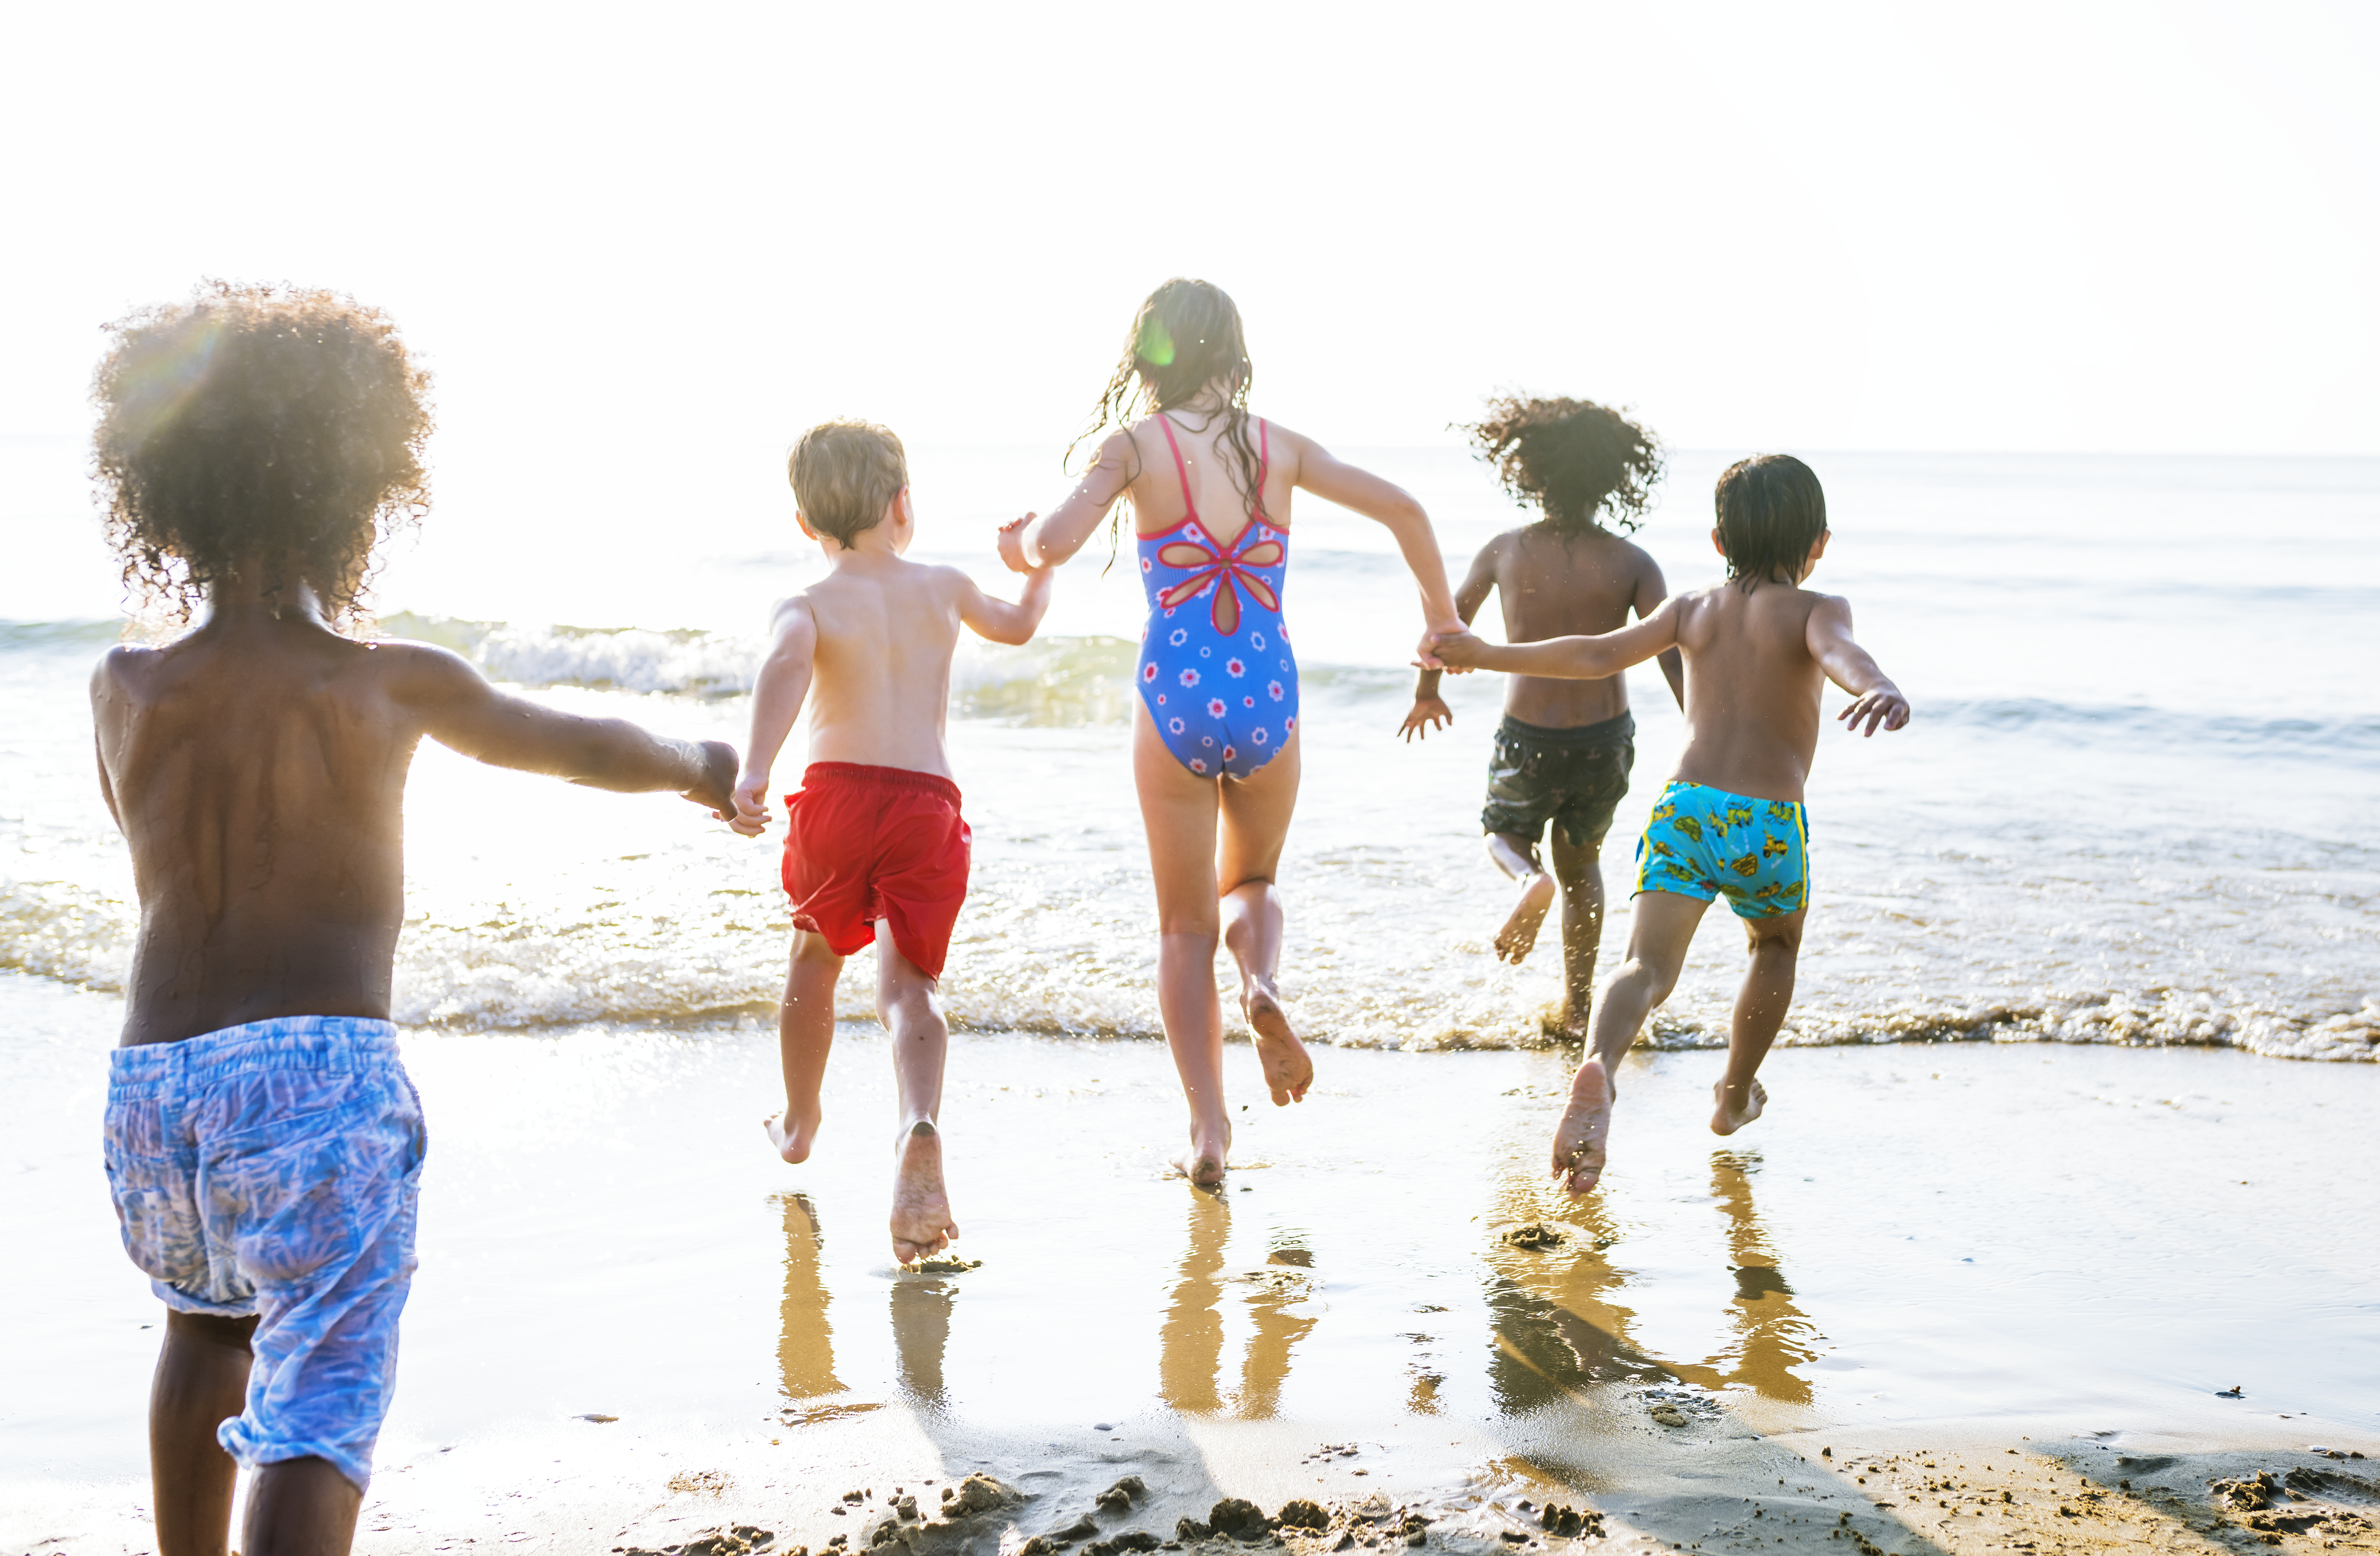 Fotografía de niños en la playa, a orillas del agua.